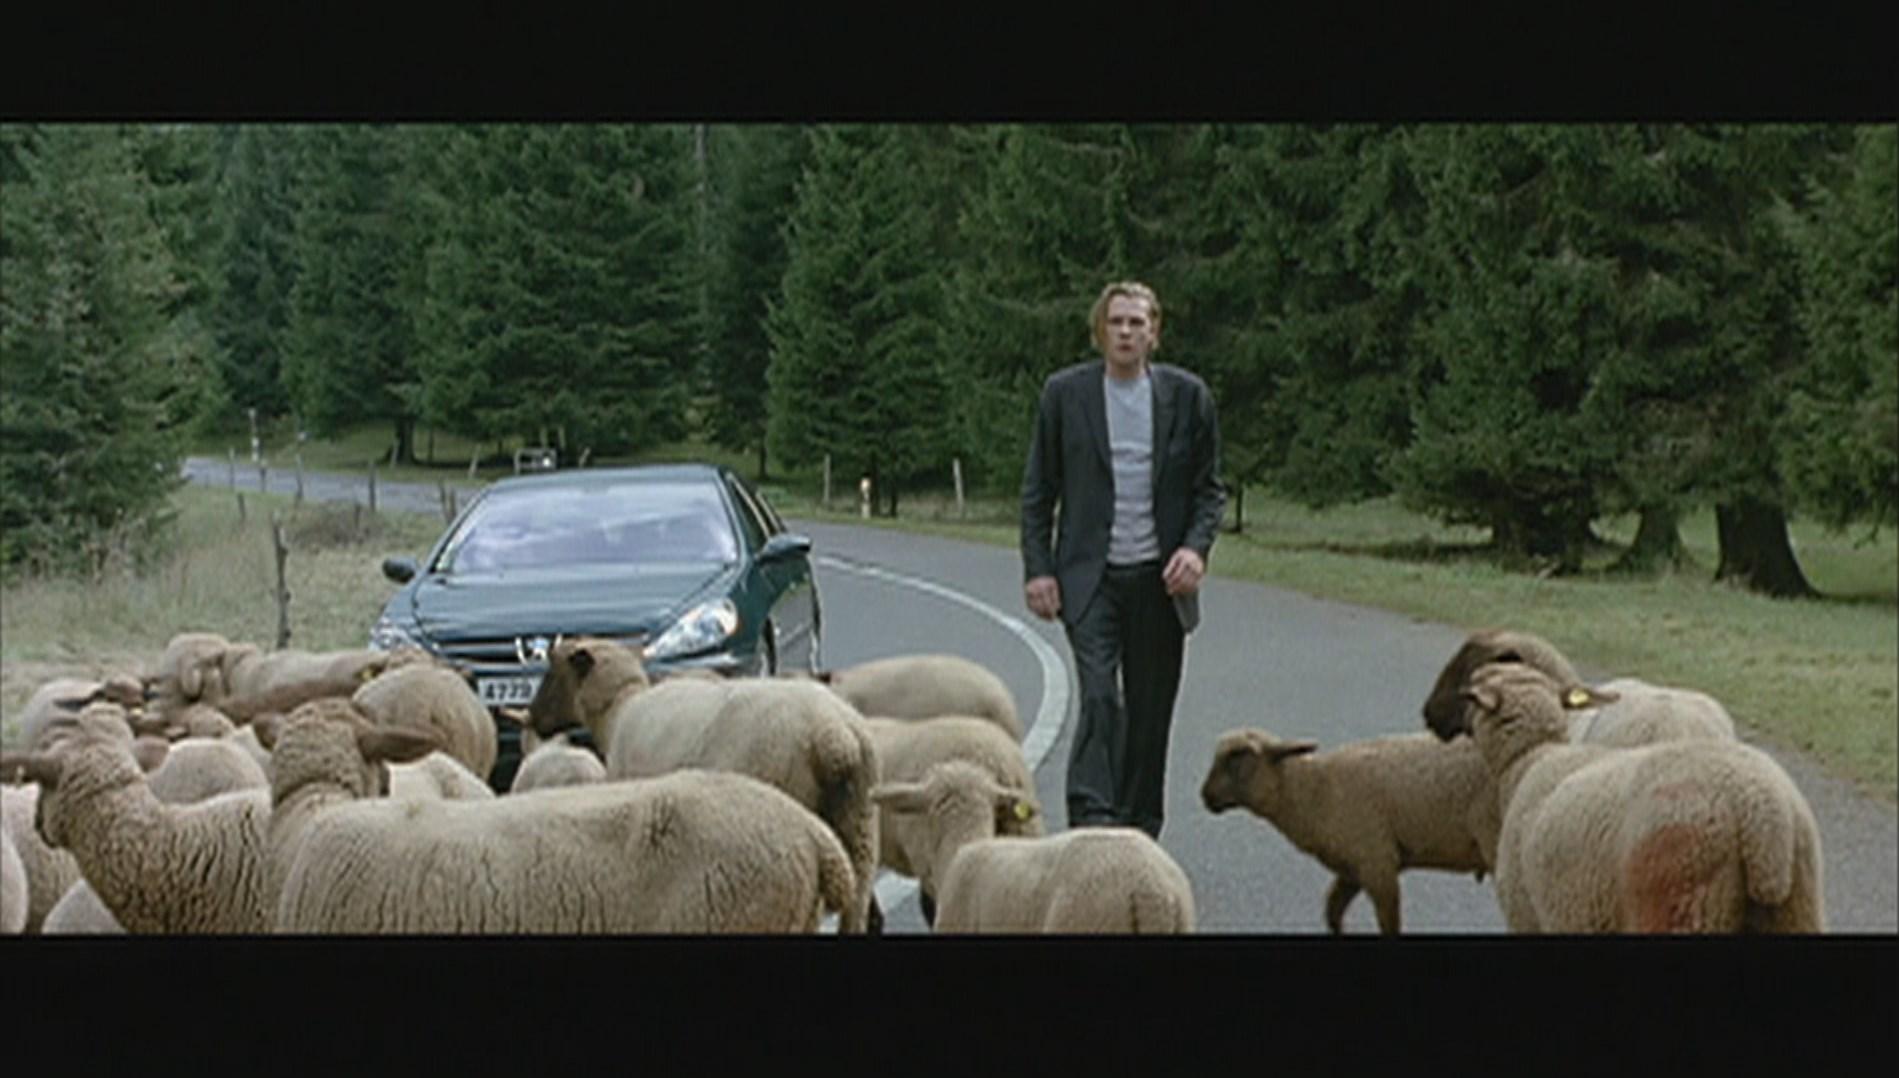 Les moutons et les sapins arbitrent le conflit familial entre Guillaume et Gérard Depardieu dans "Aime ton père".